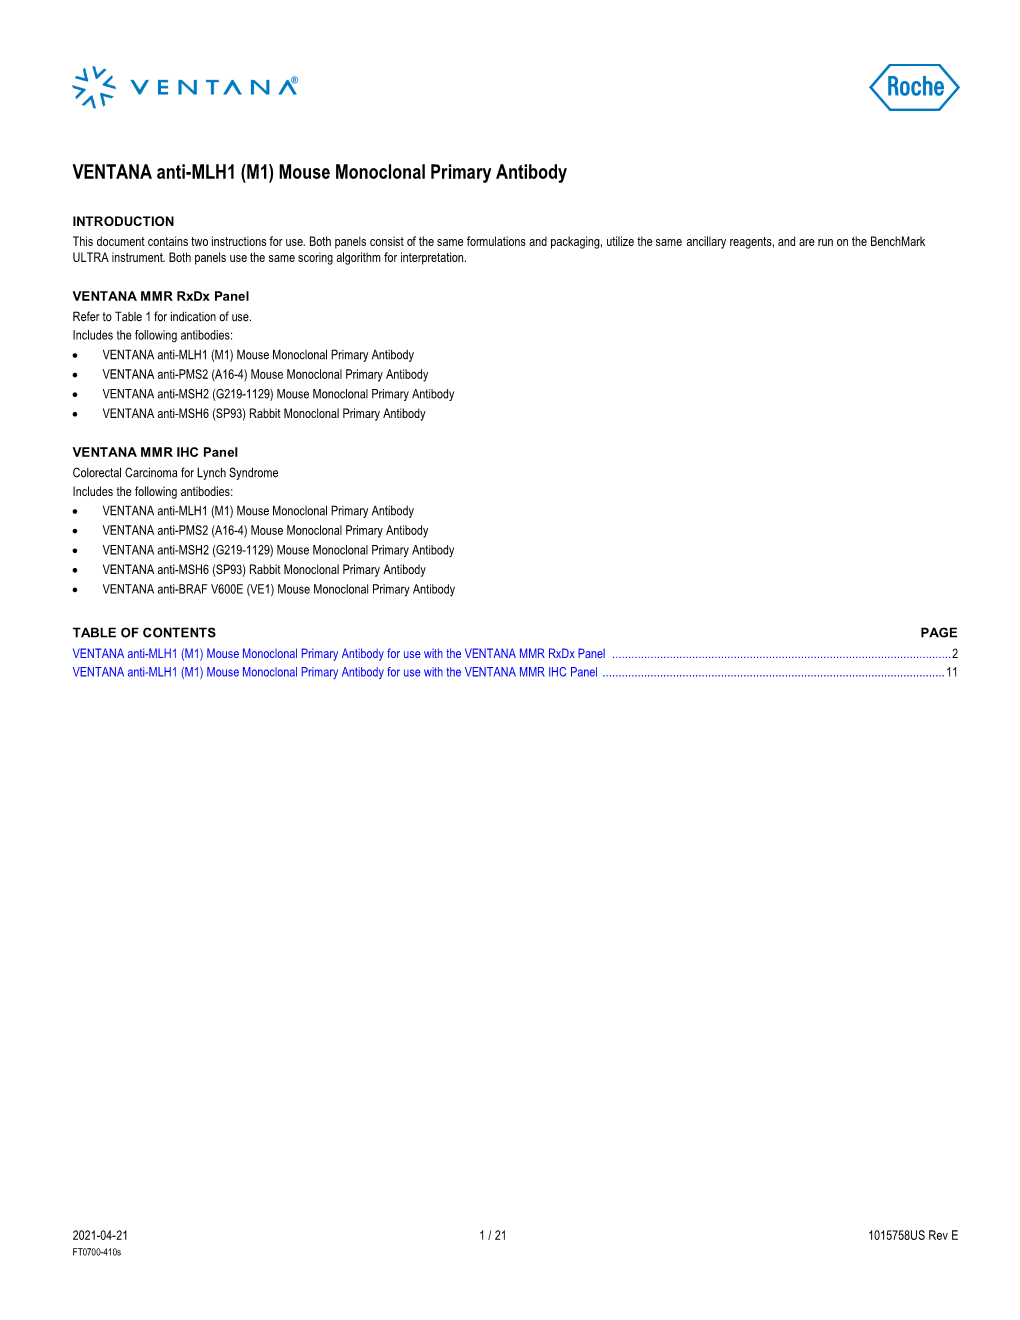 VENTANA Anti-MLH1 (M1) Mouse Monoclonal Primary Antibody